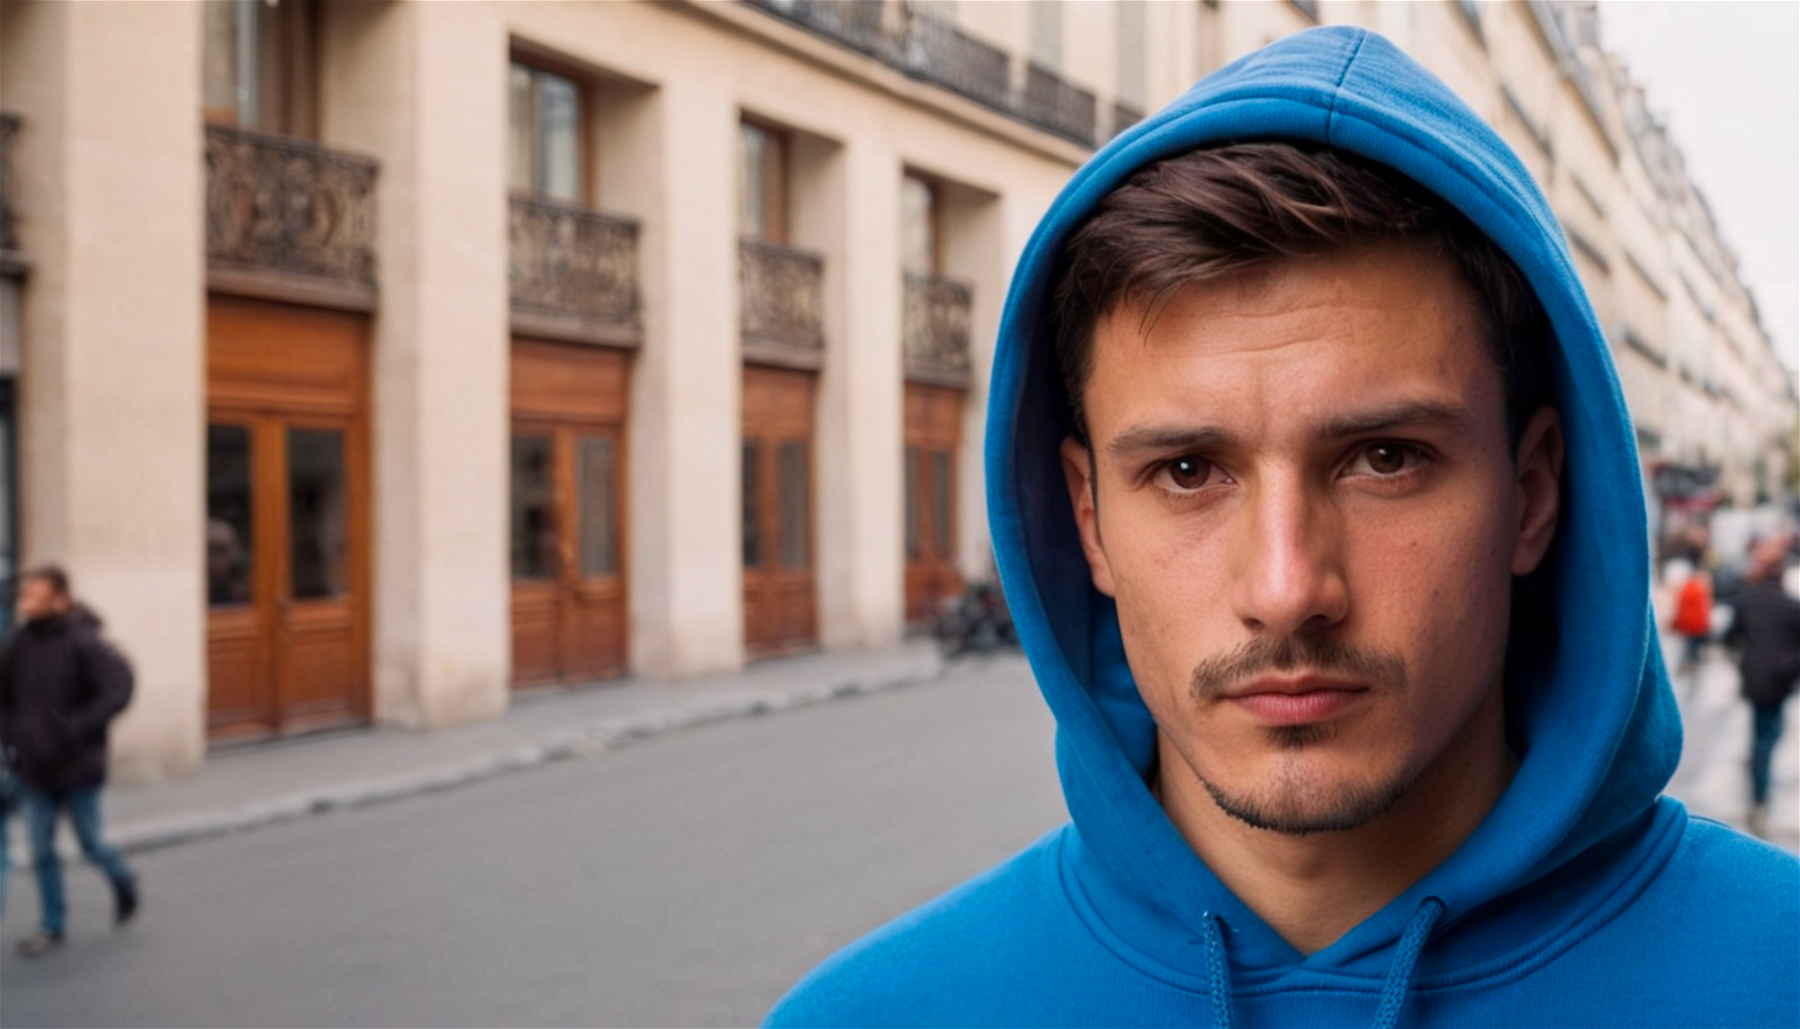 portrait of a man wearing a blue hoodies, amateur street photography, Paris